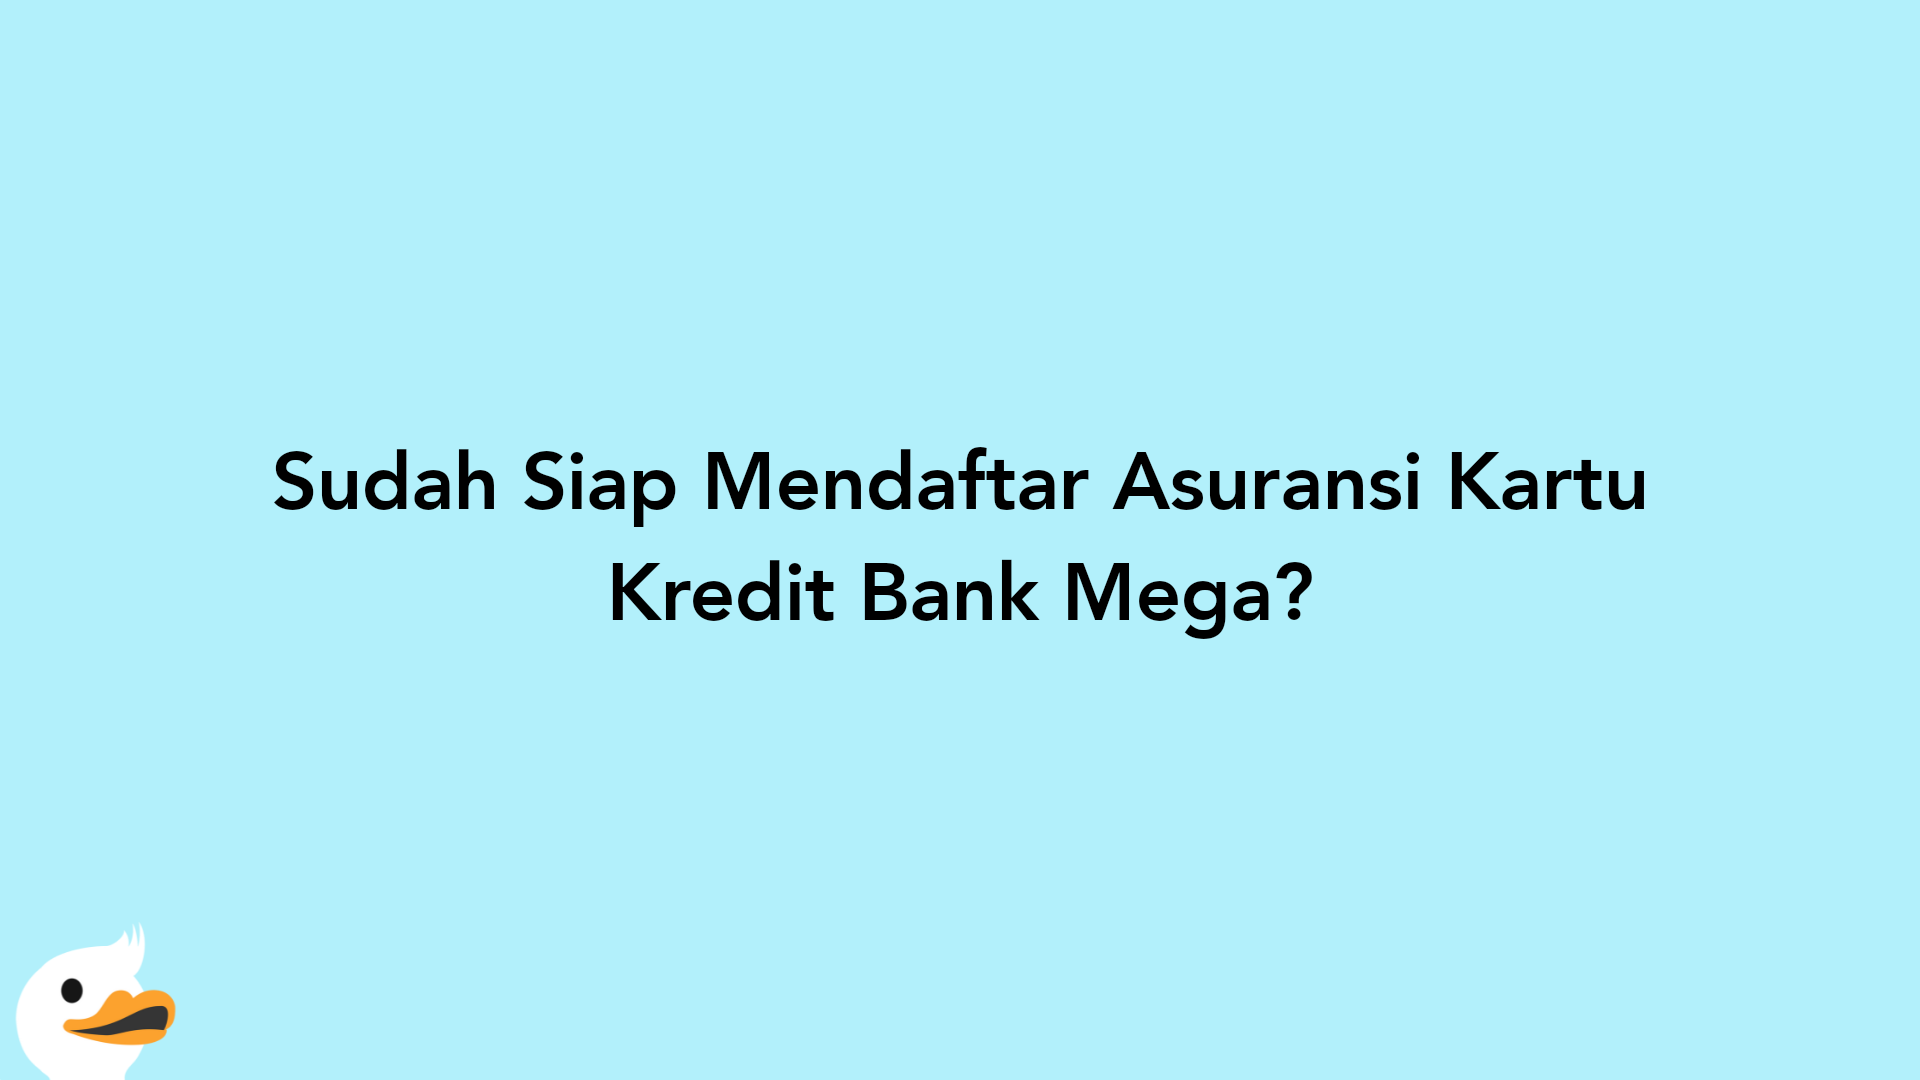 Sudah Siap Mendaftar Asuransi Kartu Kredit Bank Mega?